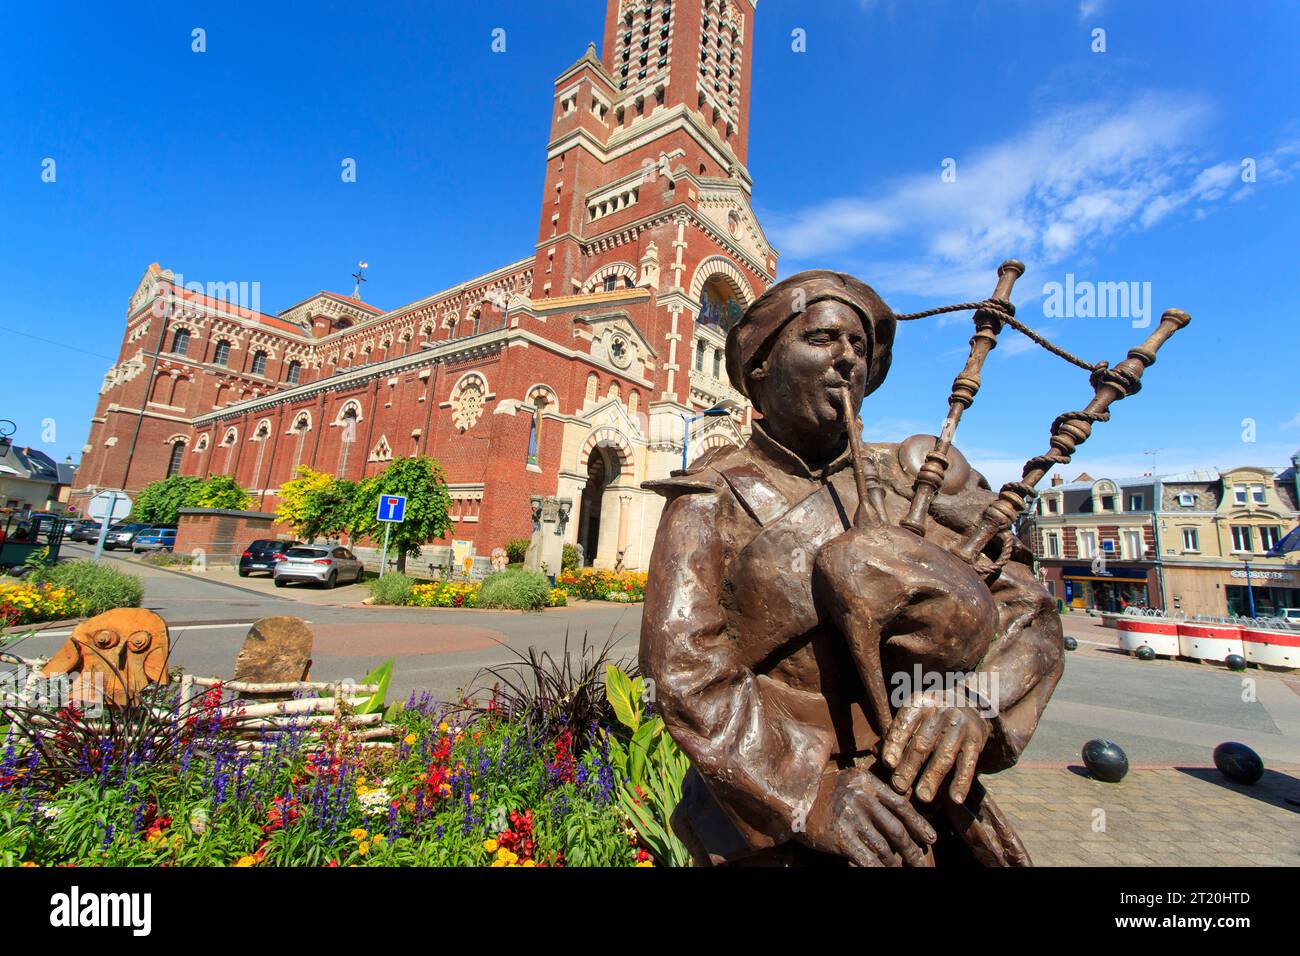 Albert (nord de la France) : statues commémorant le centenaire de la première Guerre mondiale (WWI). Soldat écossais, joueur de cornemuse Banque D'Images